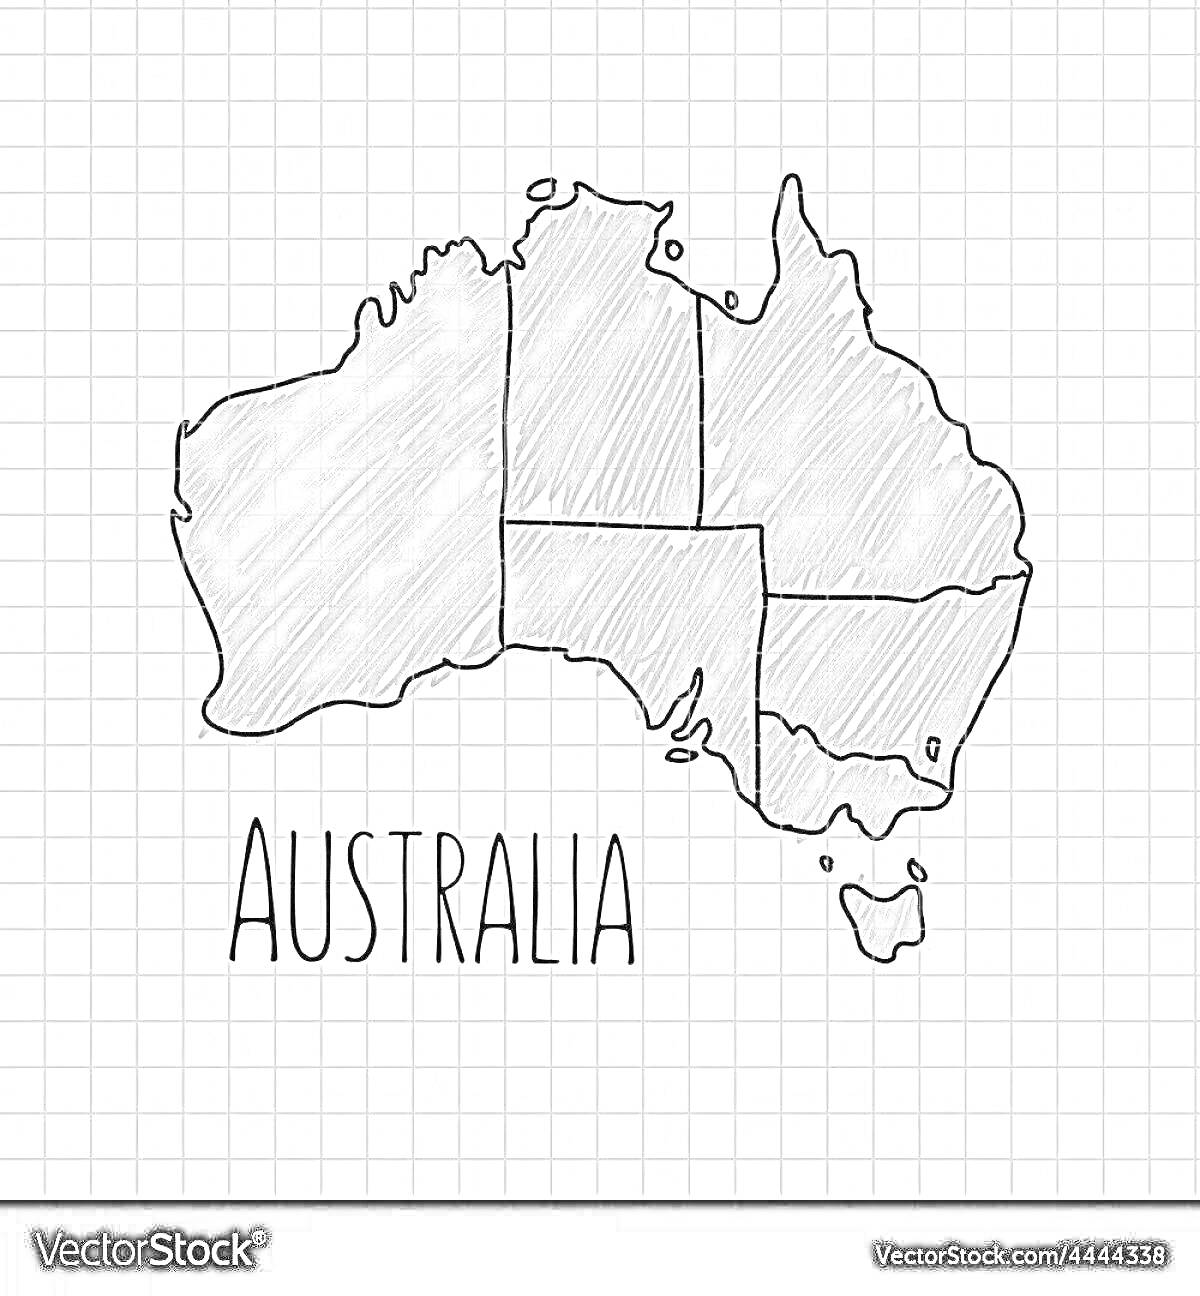 Раскраска Раскраска - карта Австралии с границами штатов, стилизованная под карандашный рисунок, надпись 